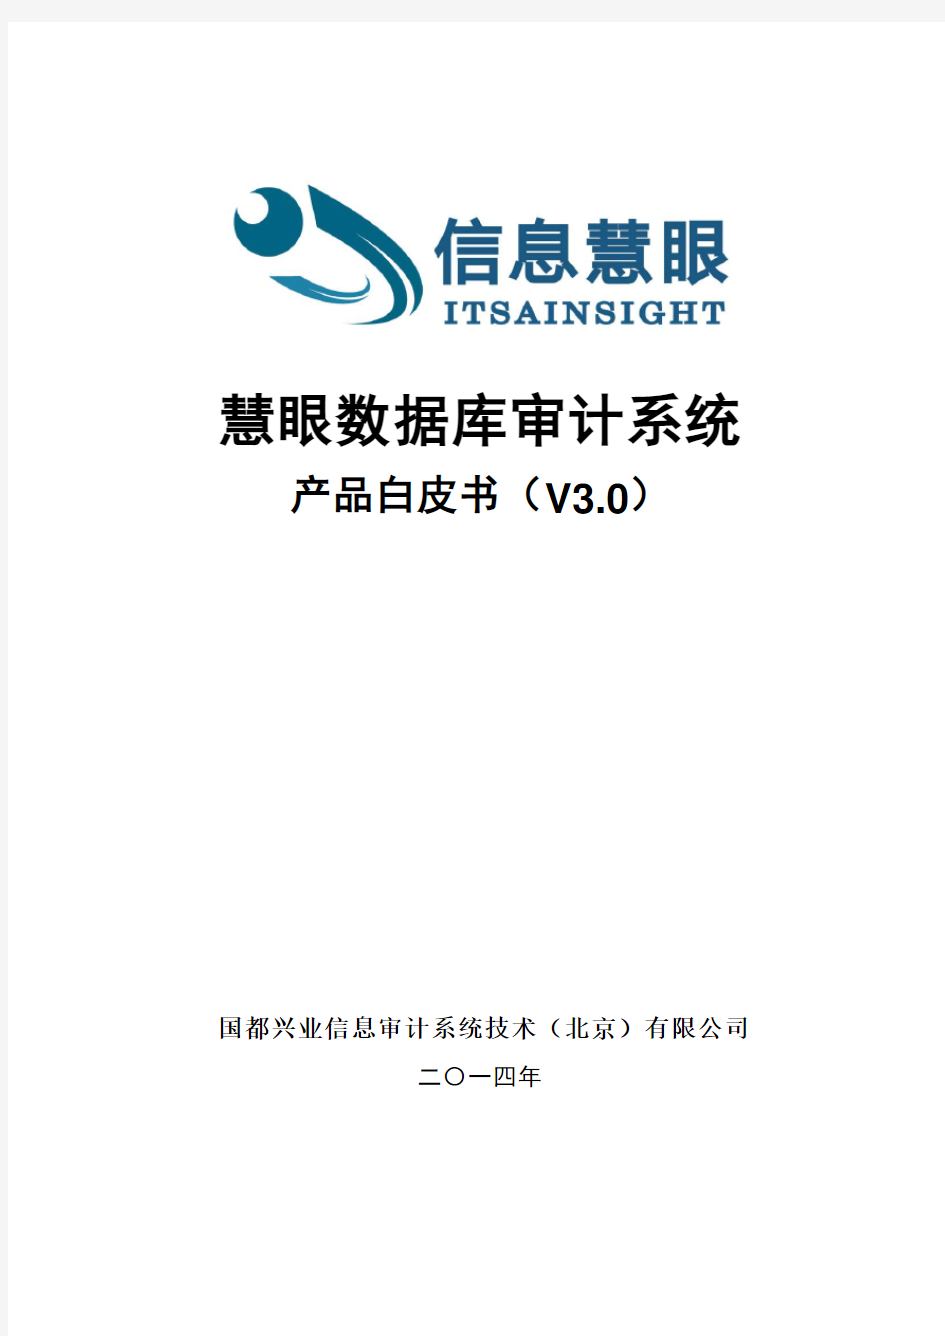 国都兴业慧眼数据库审计系统产品白皮书 v3.0